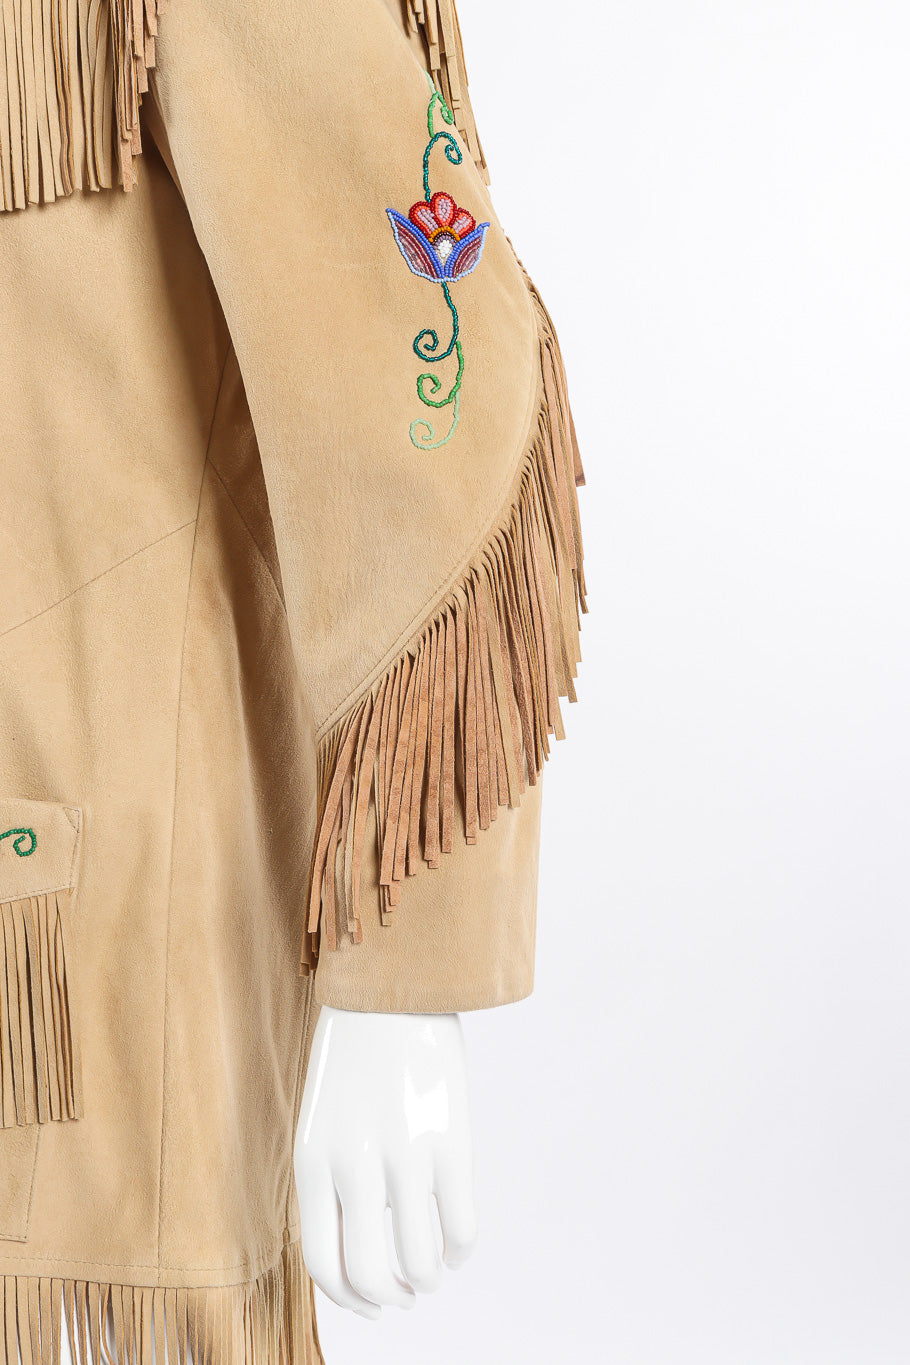 Vintage Char suede fringe jacket front sleeve closeup on mannequin @Recessla